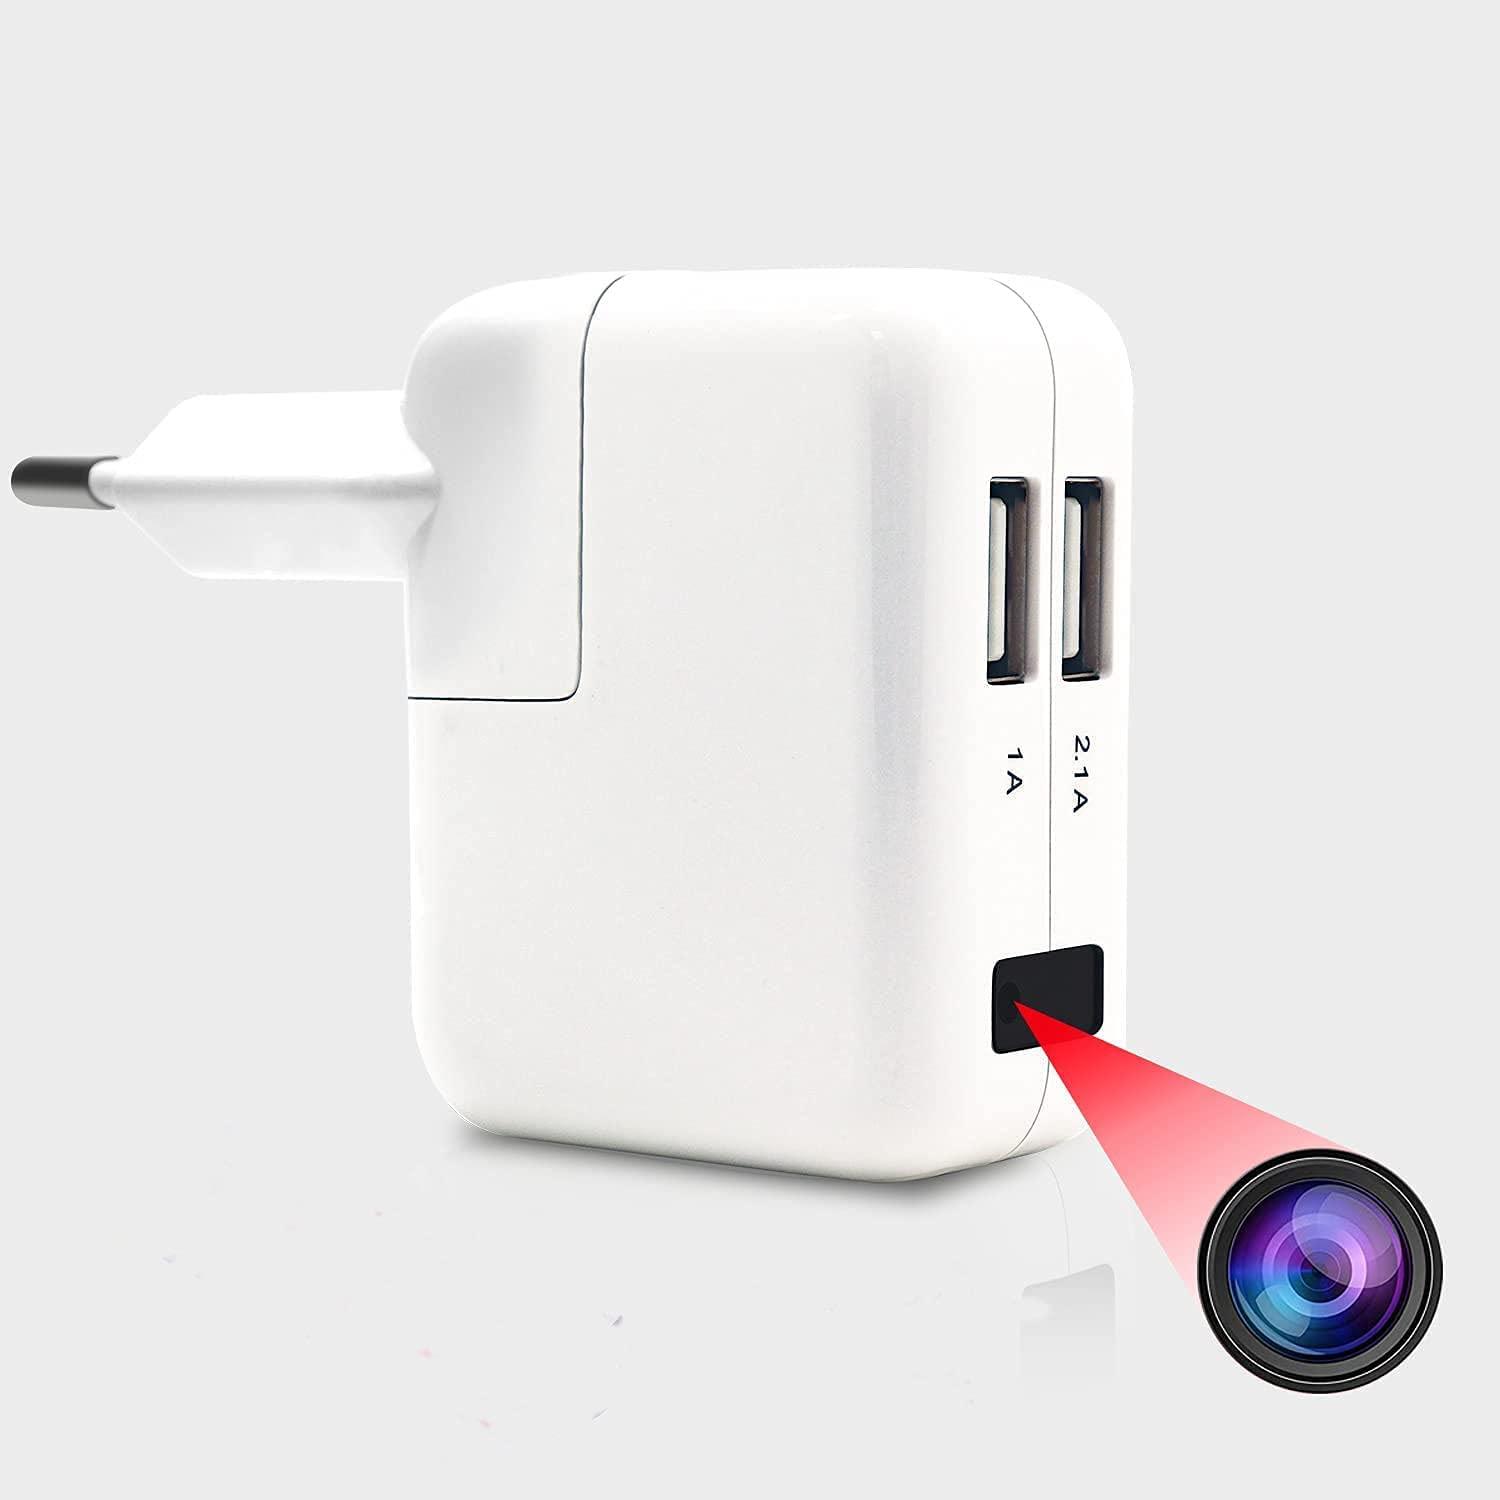 5G Cámara Espía Oculta WiFi, Mini Camaras Espias USB Cargador